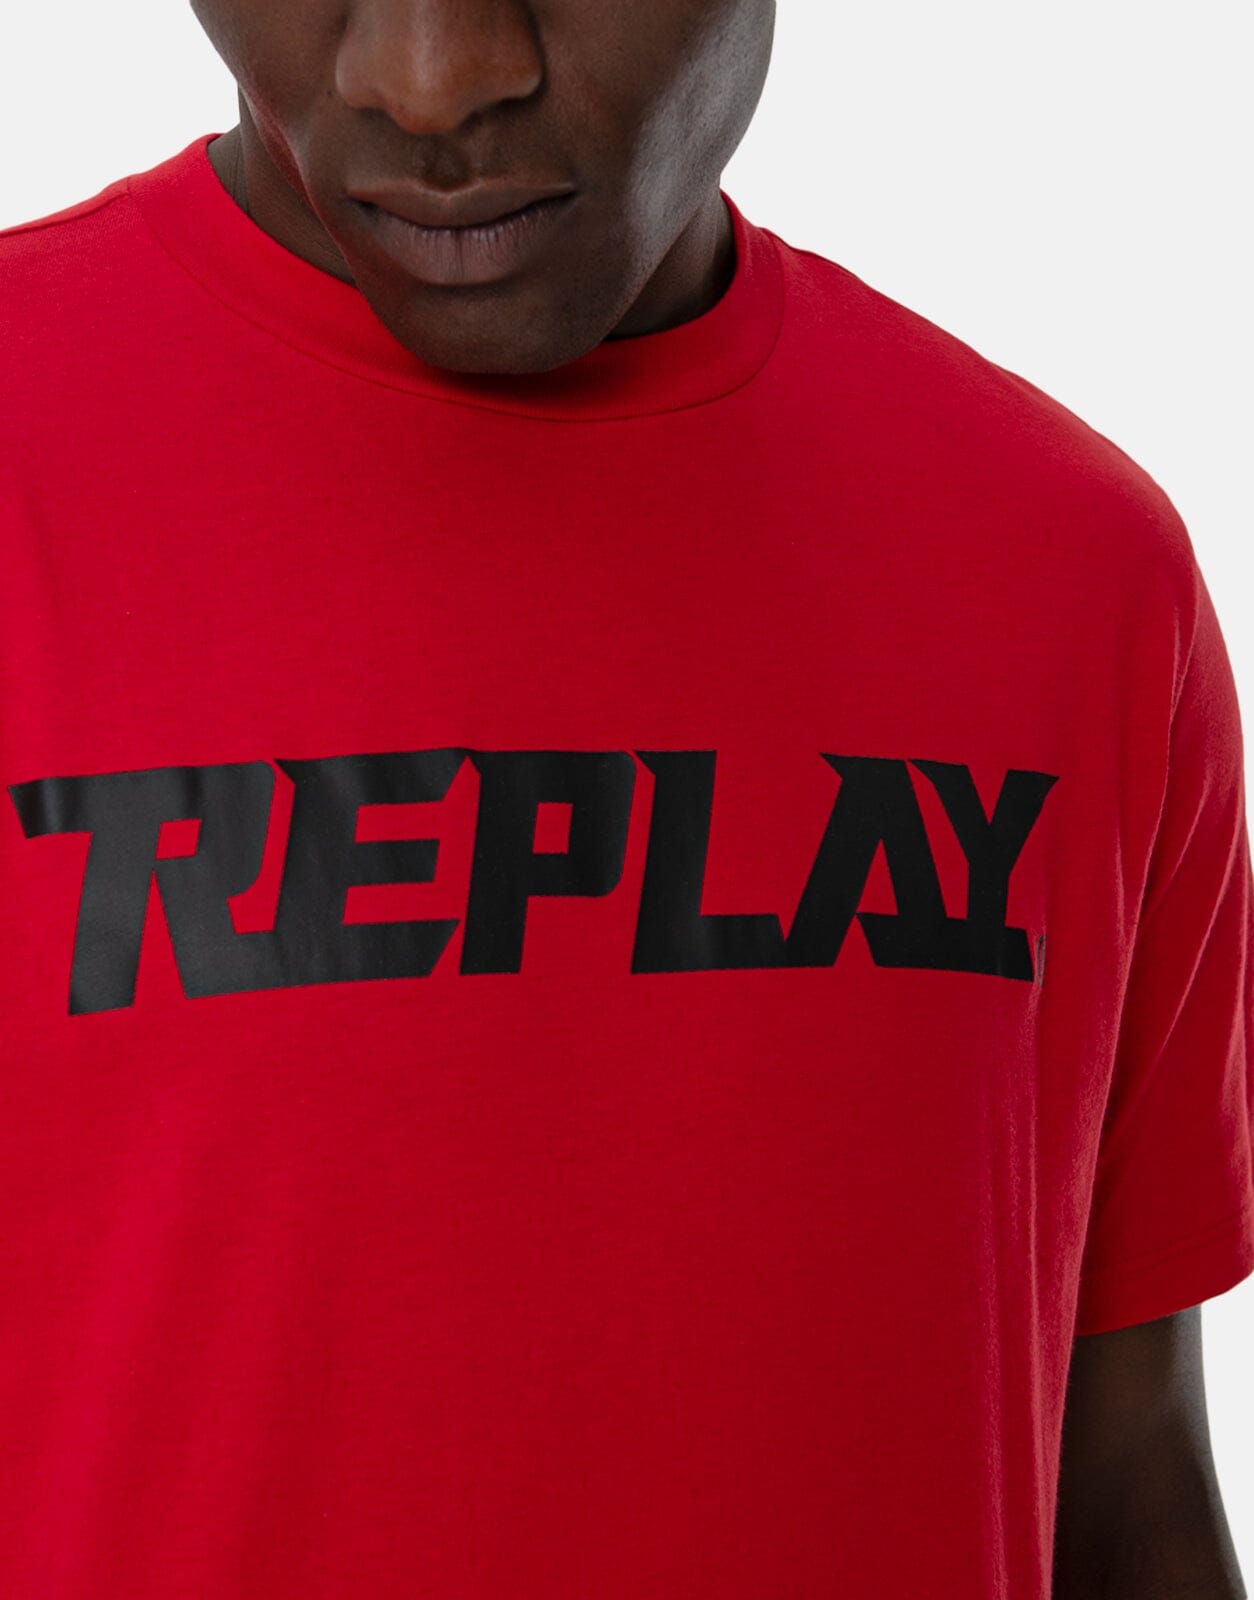 Replay Large Logo Red T-Shirt - Subwear